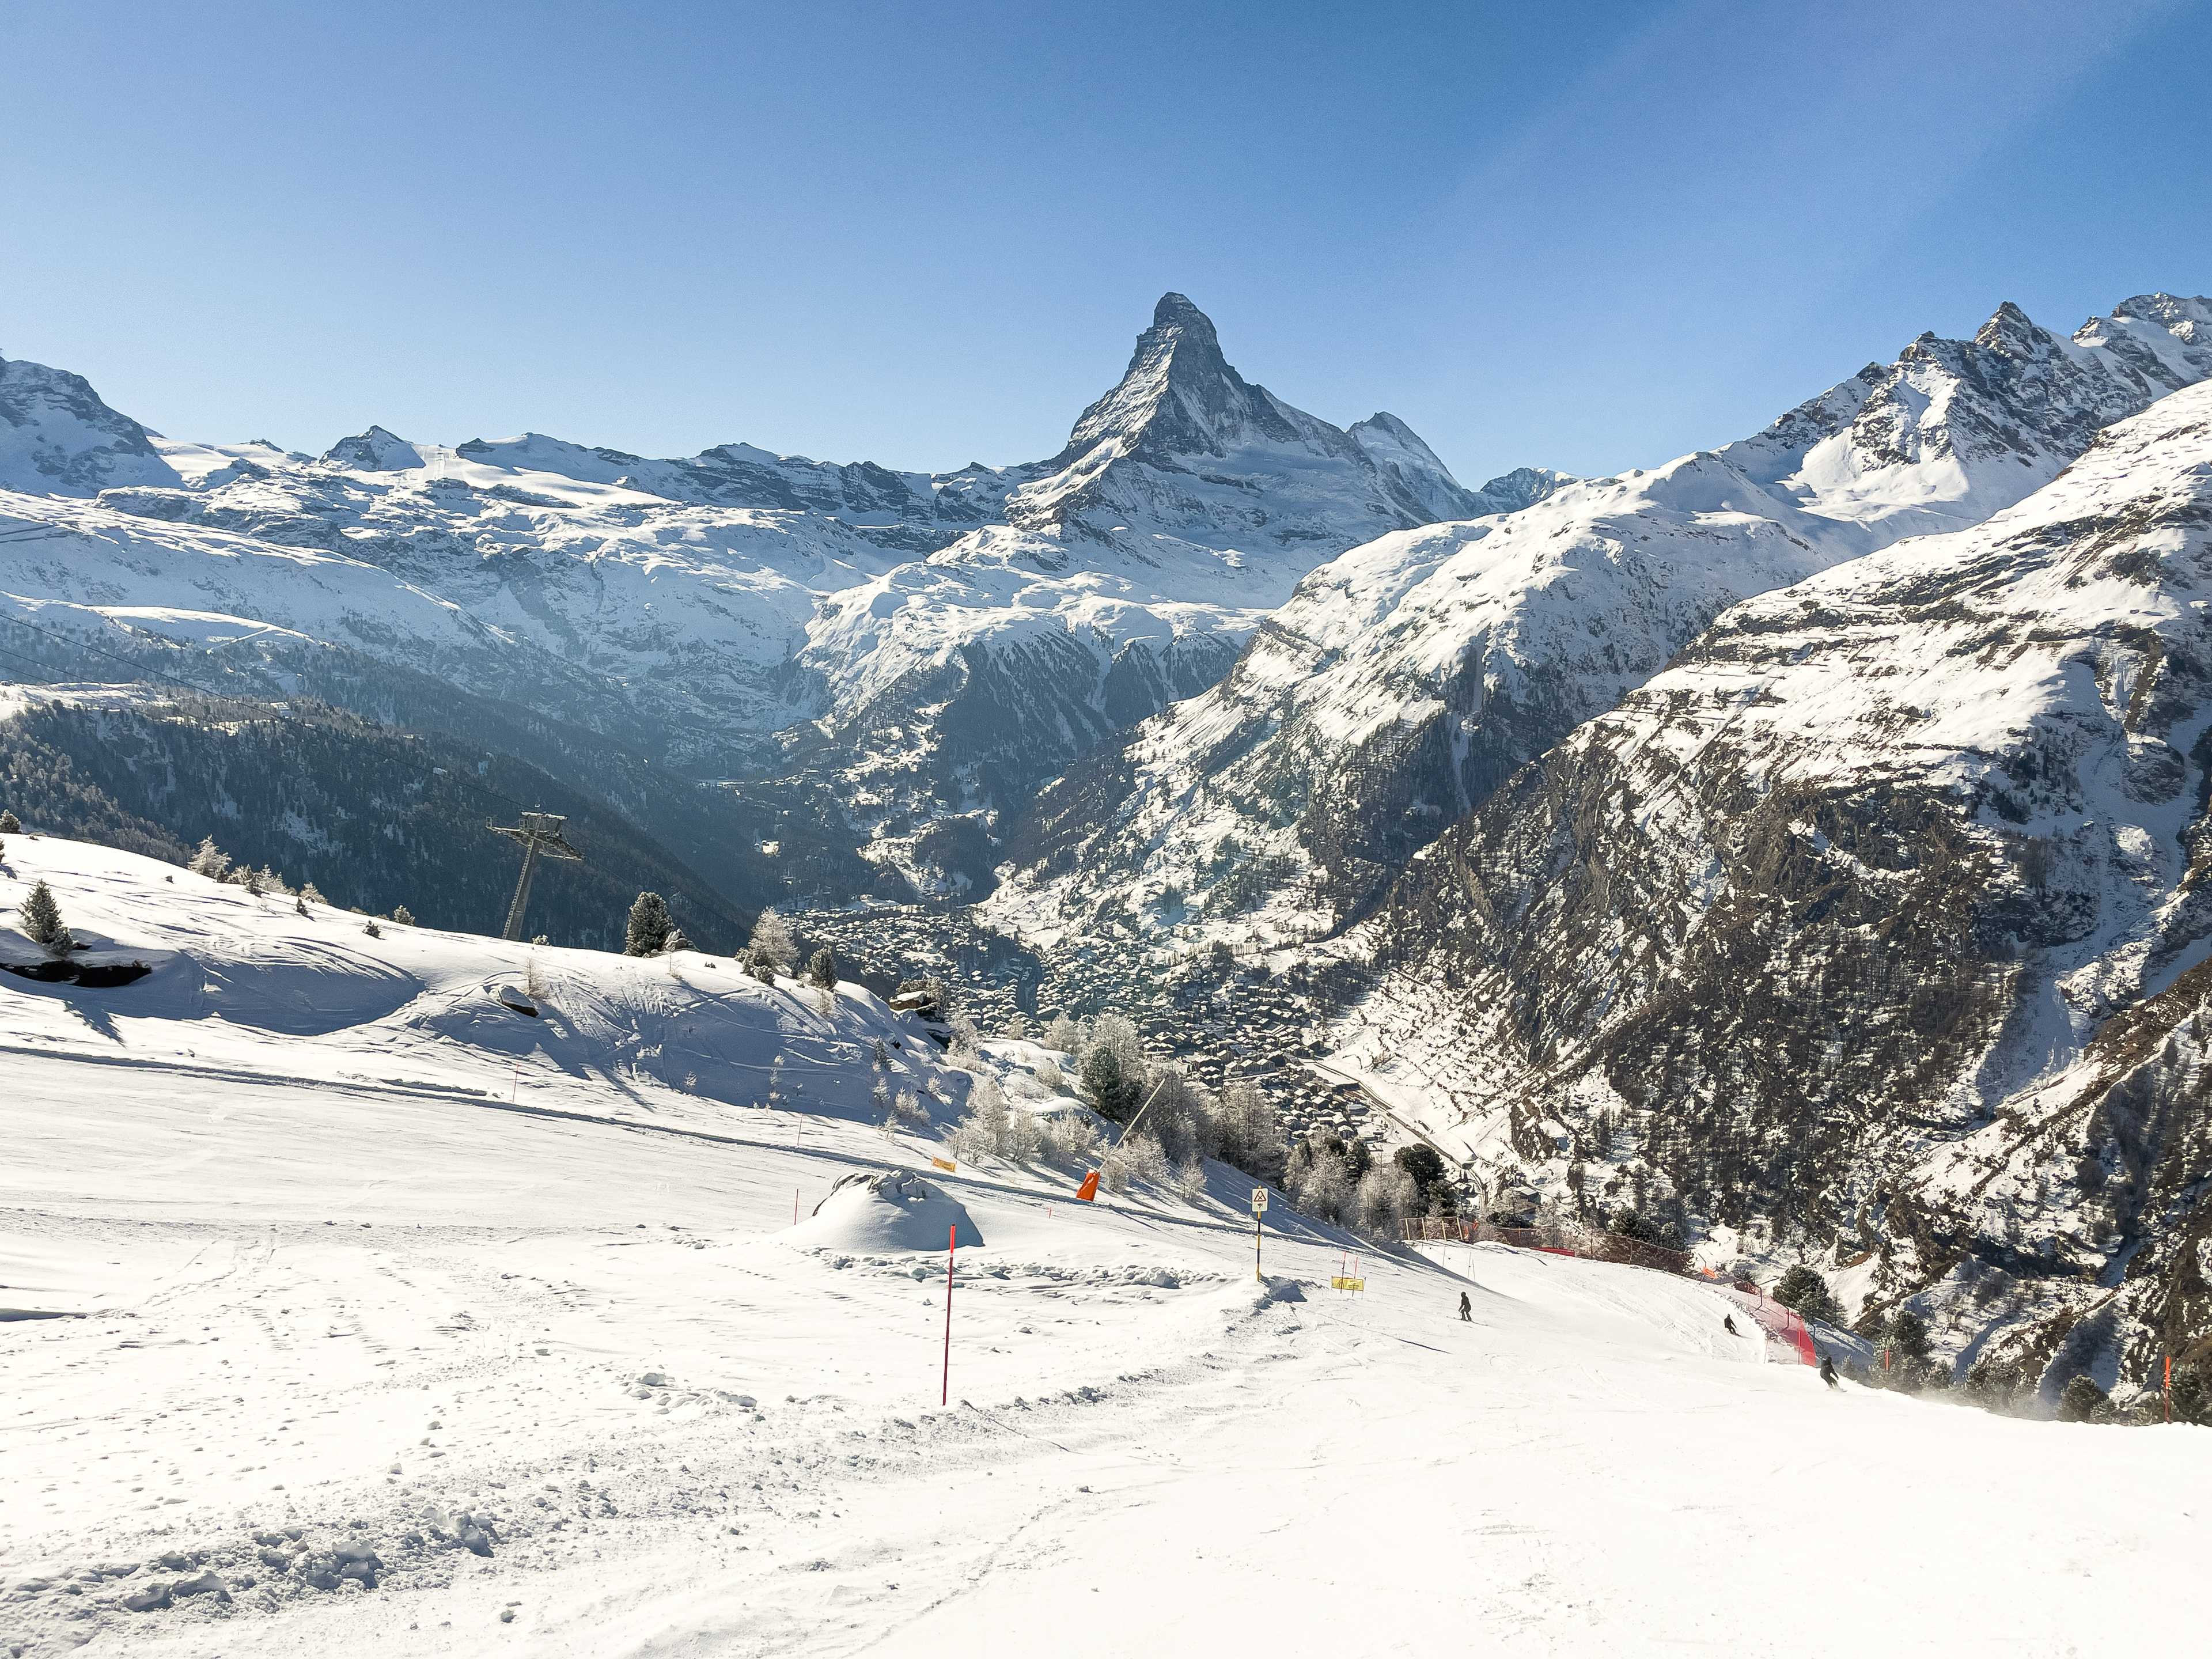 Piste no. 15 and the view of Zermatt and Matterhorn